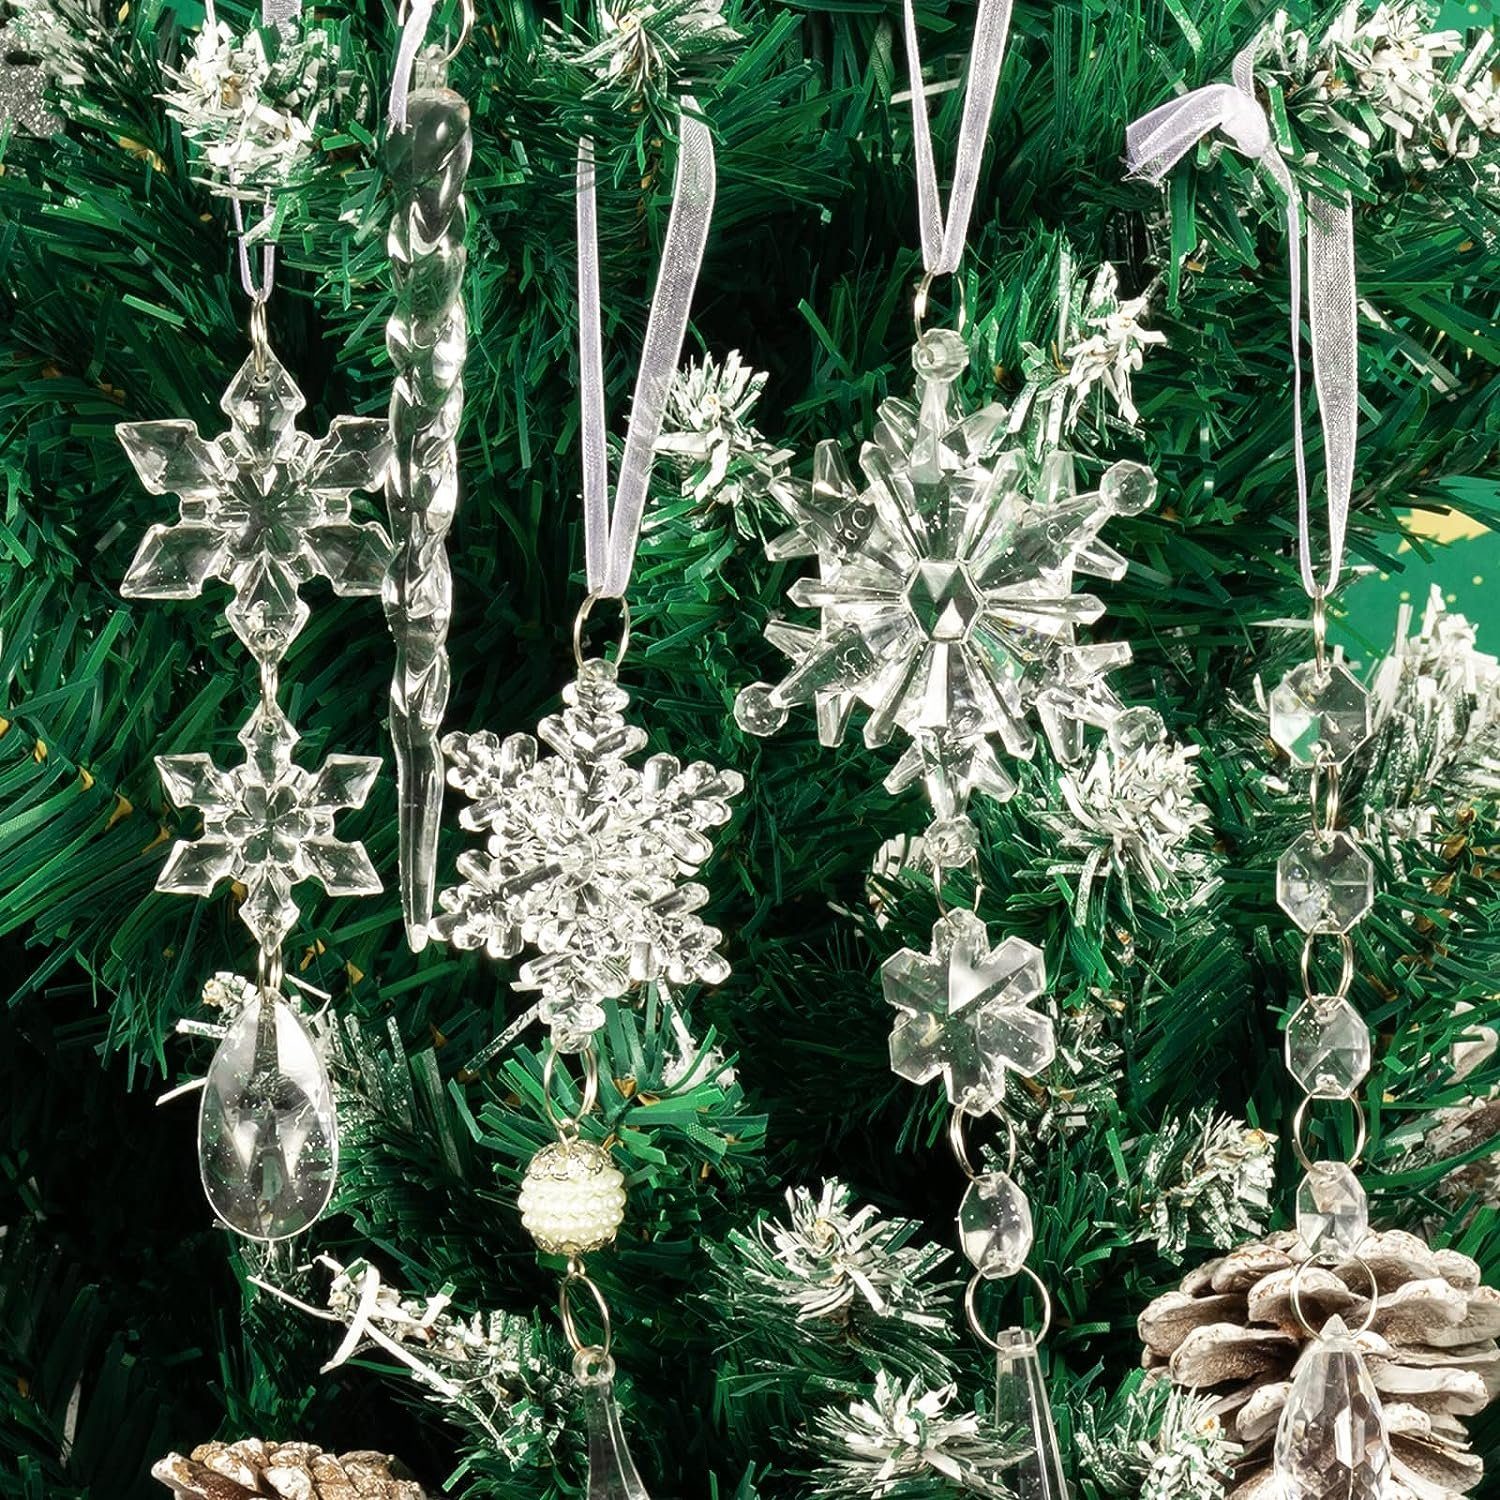 Tropfen Eiszapfen Weihnachtsbaumschmuck Stück Christbaumschmuck 10 Kristallornamente, Lamon hängende Weihnachtsschneeflocken transparent